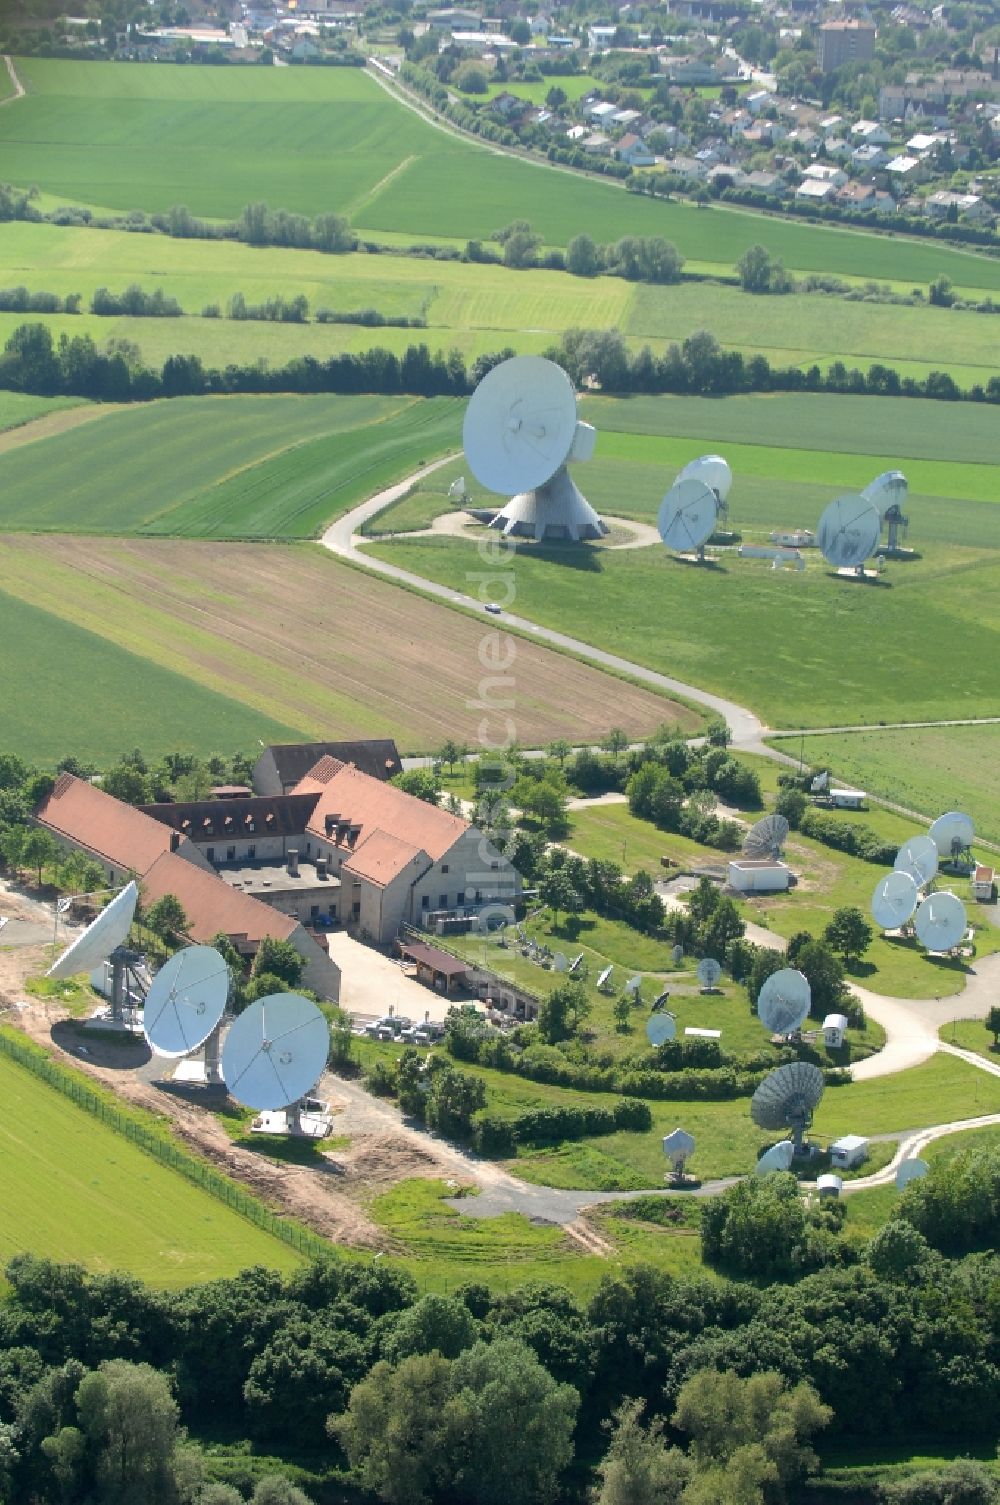 Luftaufnahme Fuchsstadt - Parbolantenne - Satellitenschüsseln in Fuchsstadt im Bundesland Bayern, Deutschland